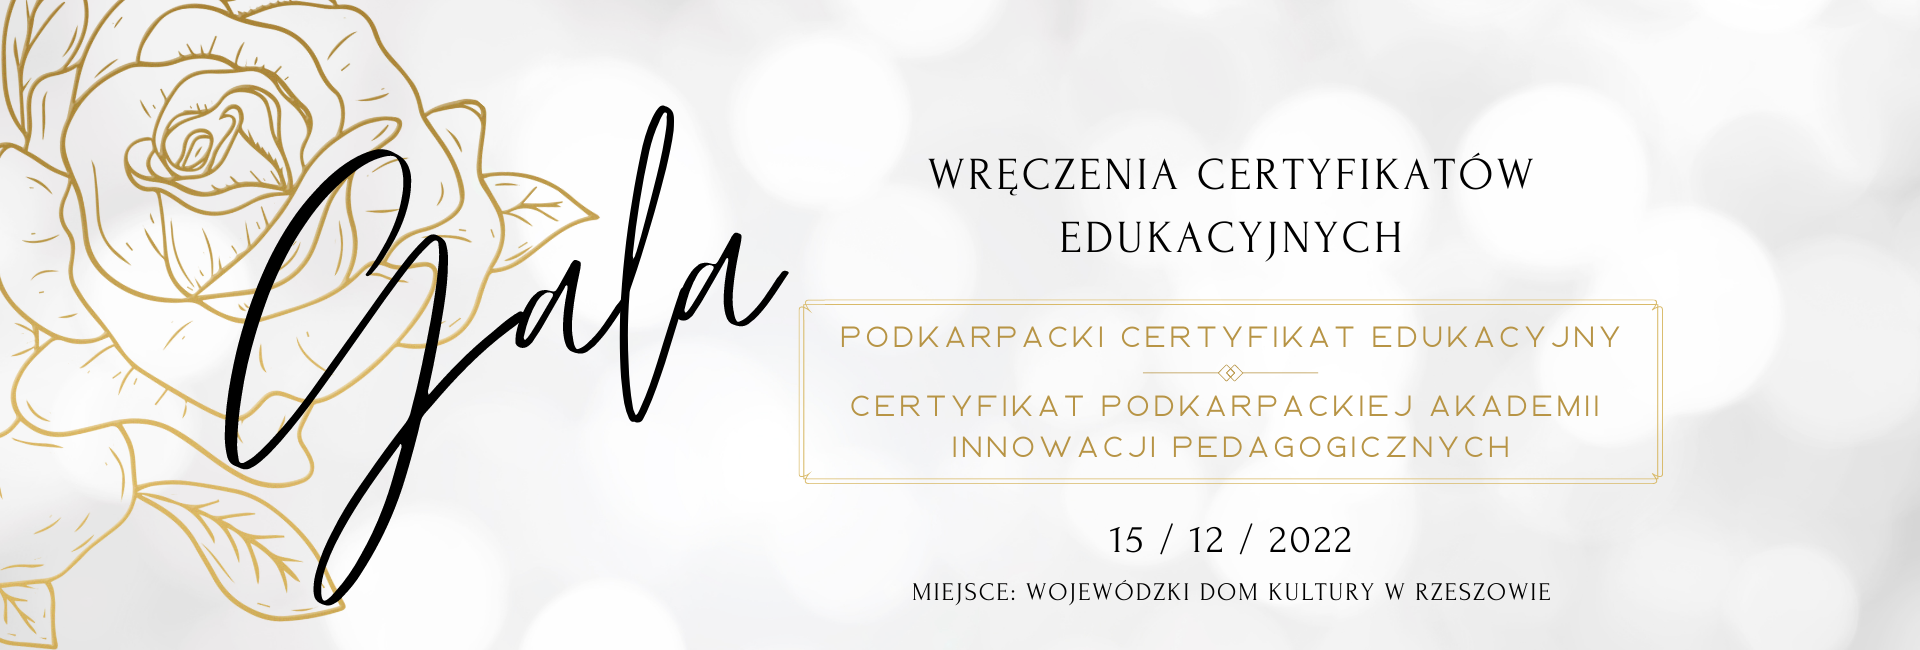 Gala wręczenia certyfikatów edukacyjnych - 15 grudnia 2022. Podkarpacki Certyfikat Edukacyjny oraz Certyfikat Podkarpackiej Akademii Innowacji  Pedagogicznych